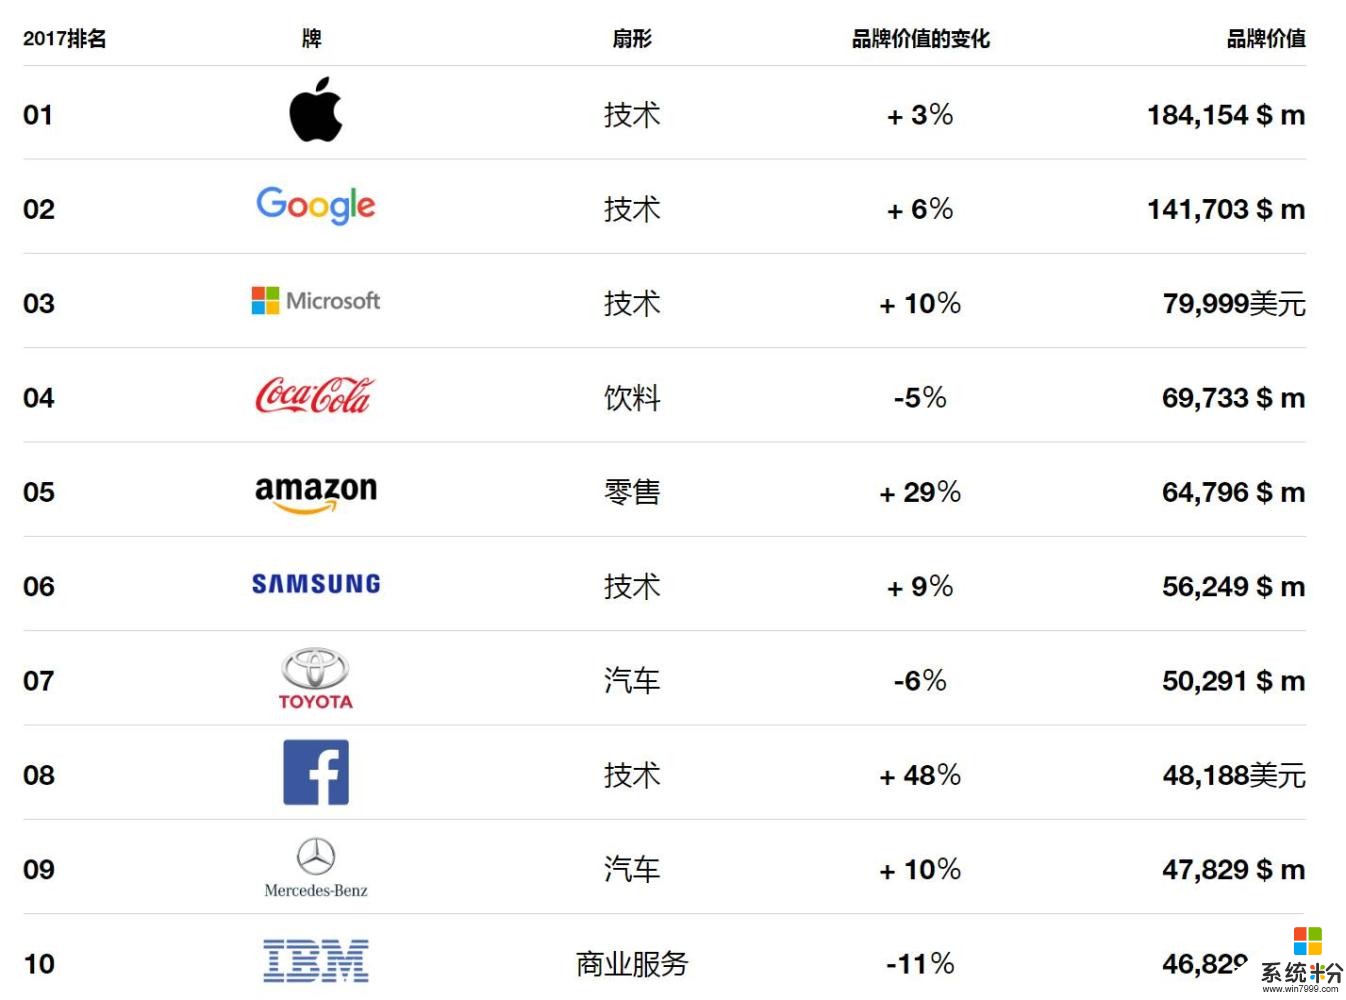 全球最有价值品牌排名出炉, 苹果、谷歌、微软和可口可乐接管了世界